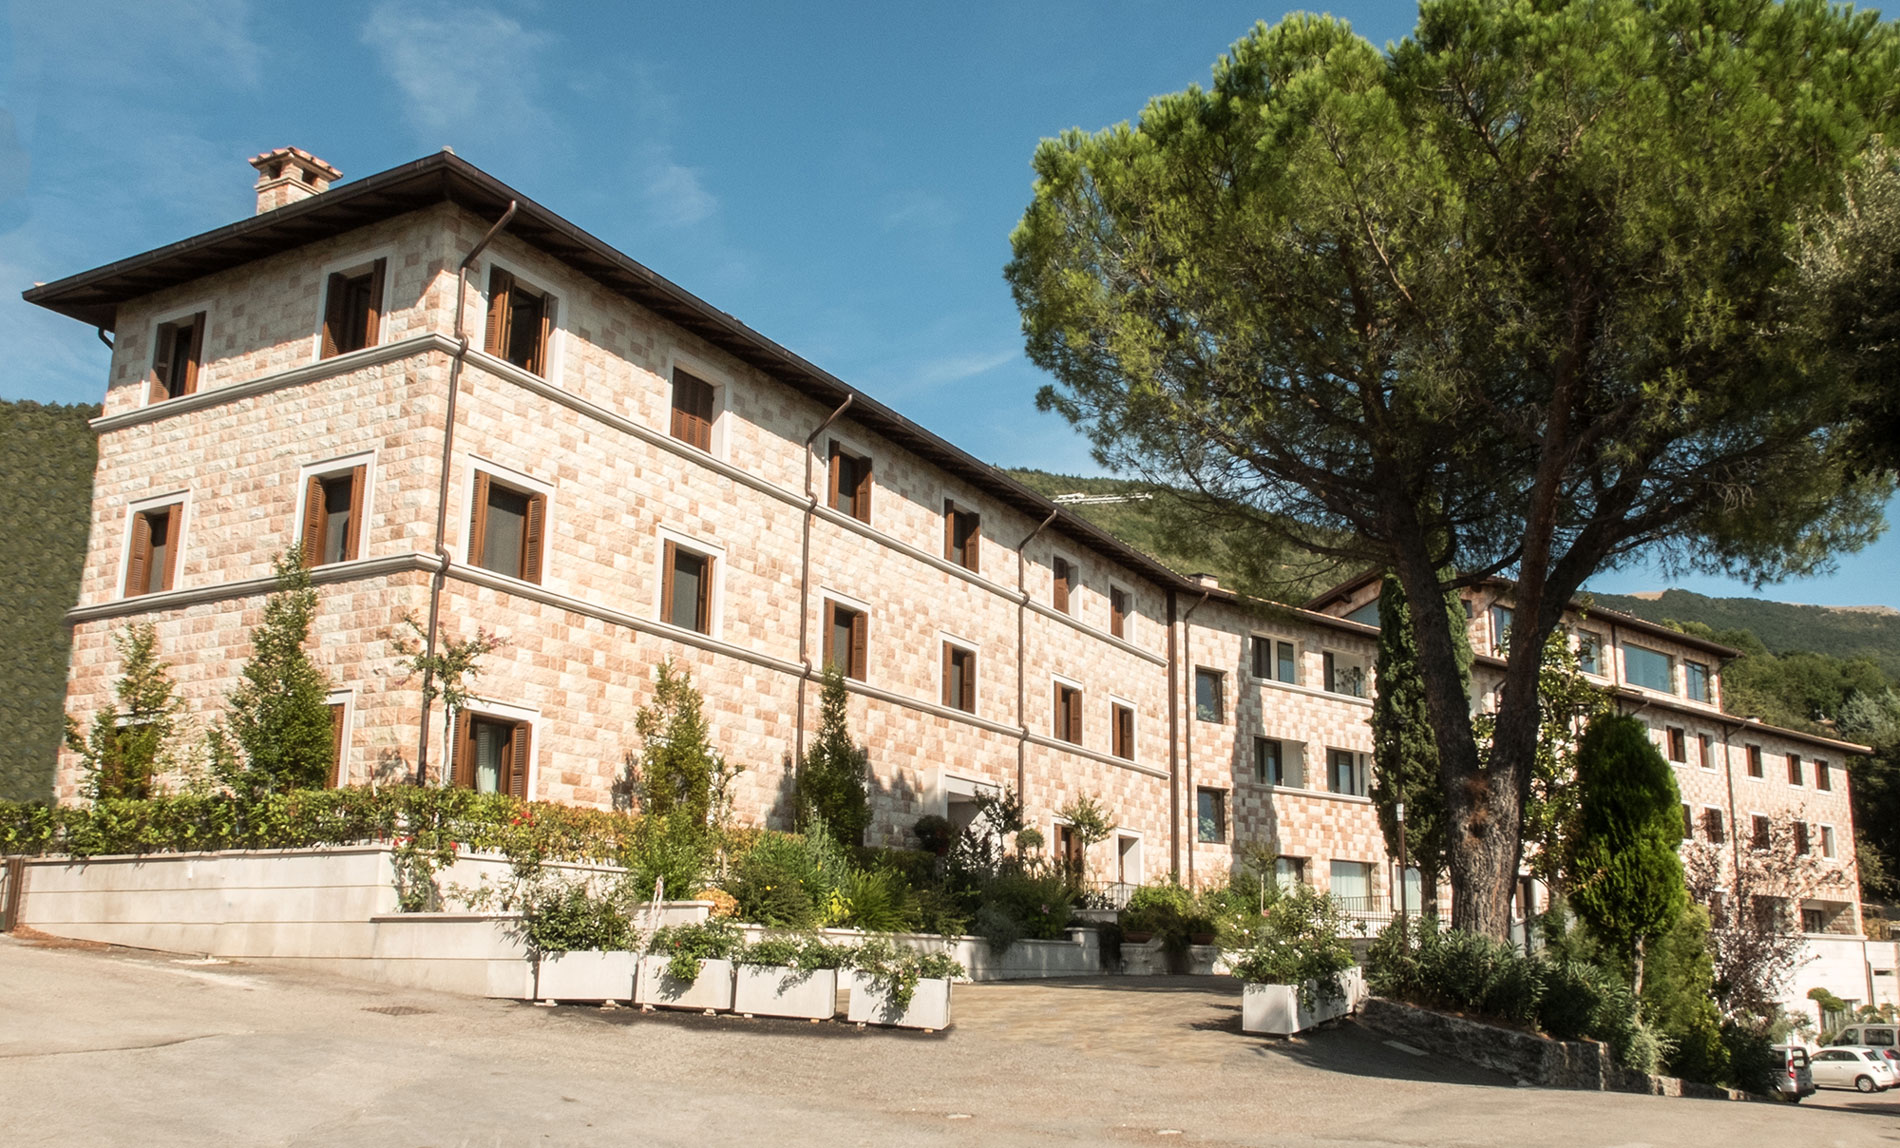 Domus Laetitiae Assisi - Centro di Spiritualità e Accoglienza